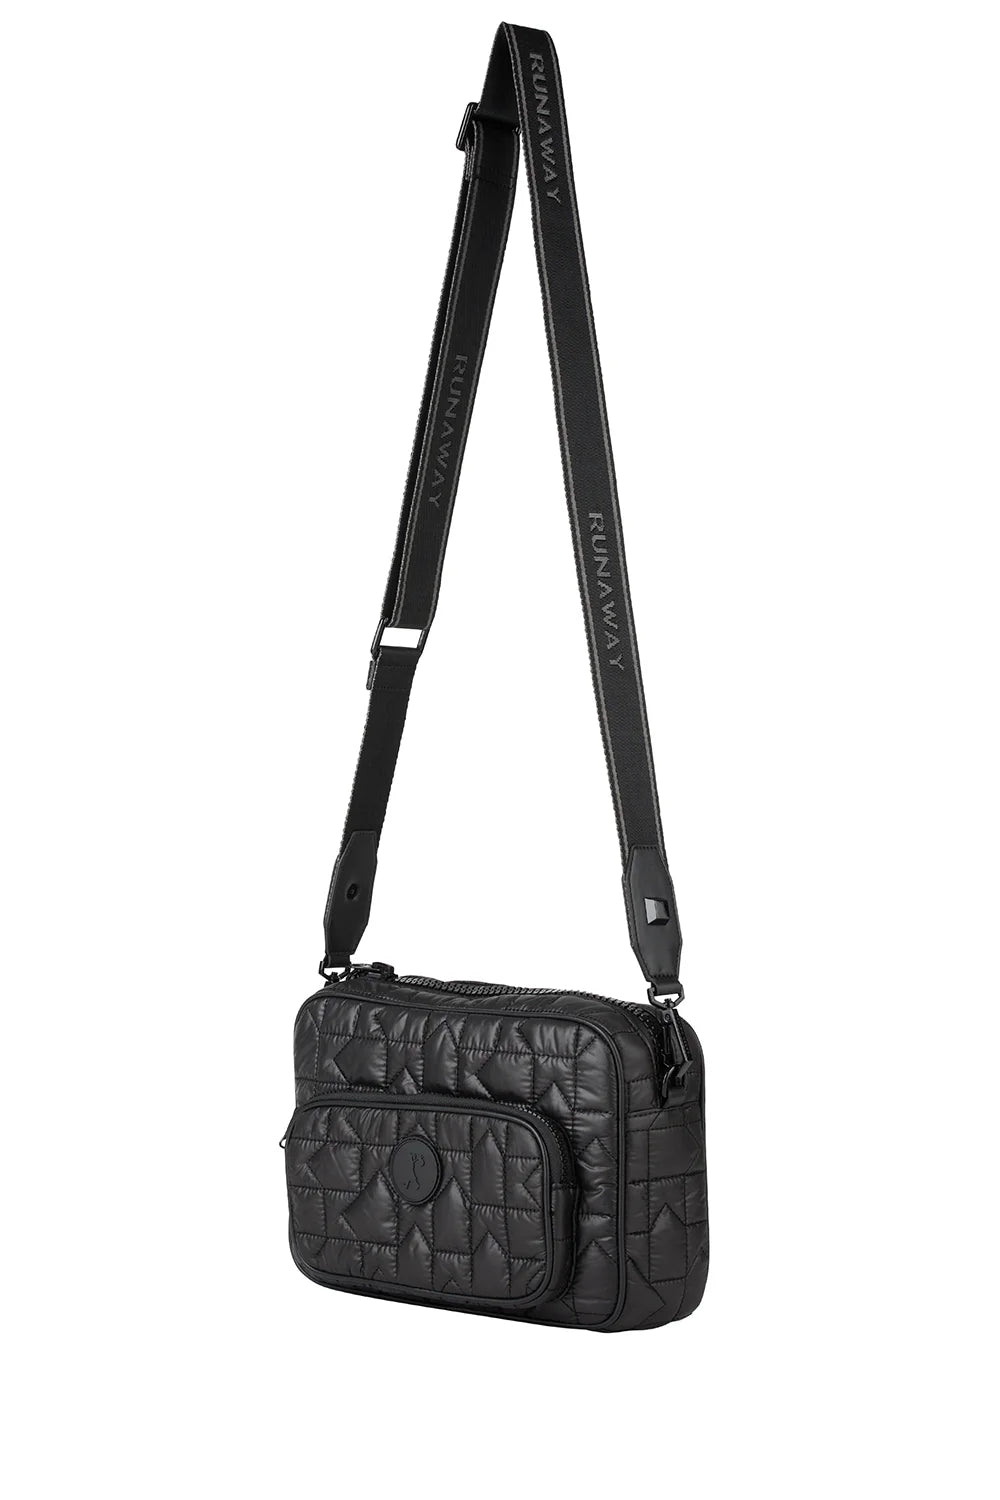 Karen Walker | Monogram Quilted Large Camera Bag | Black | Palm Boutique